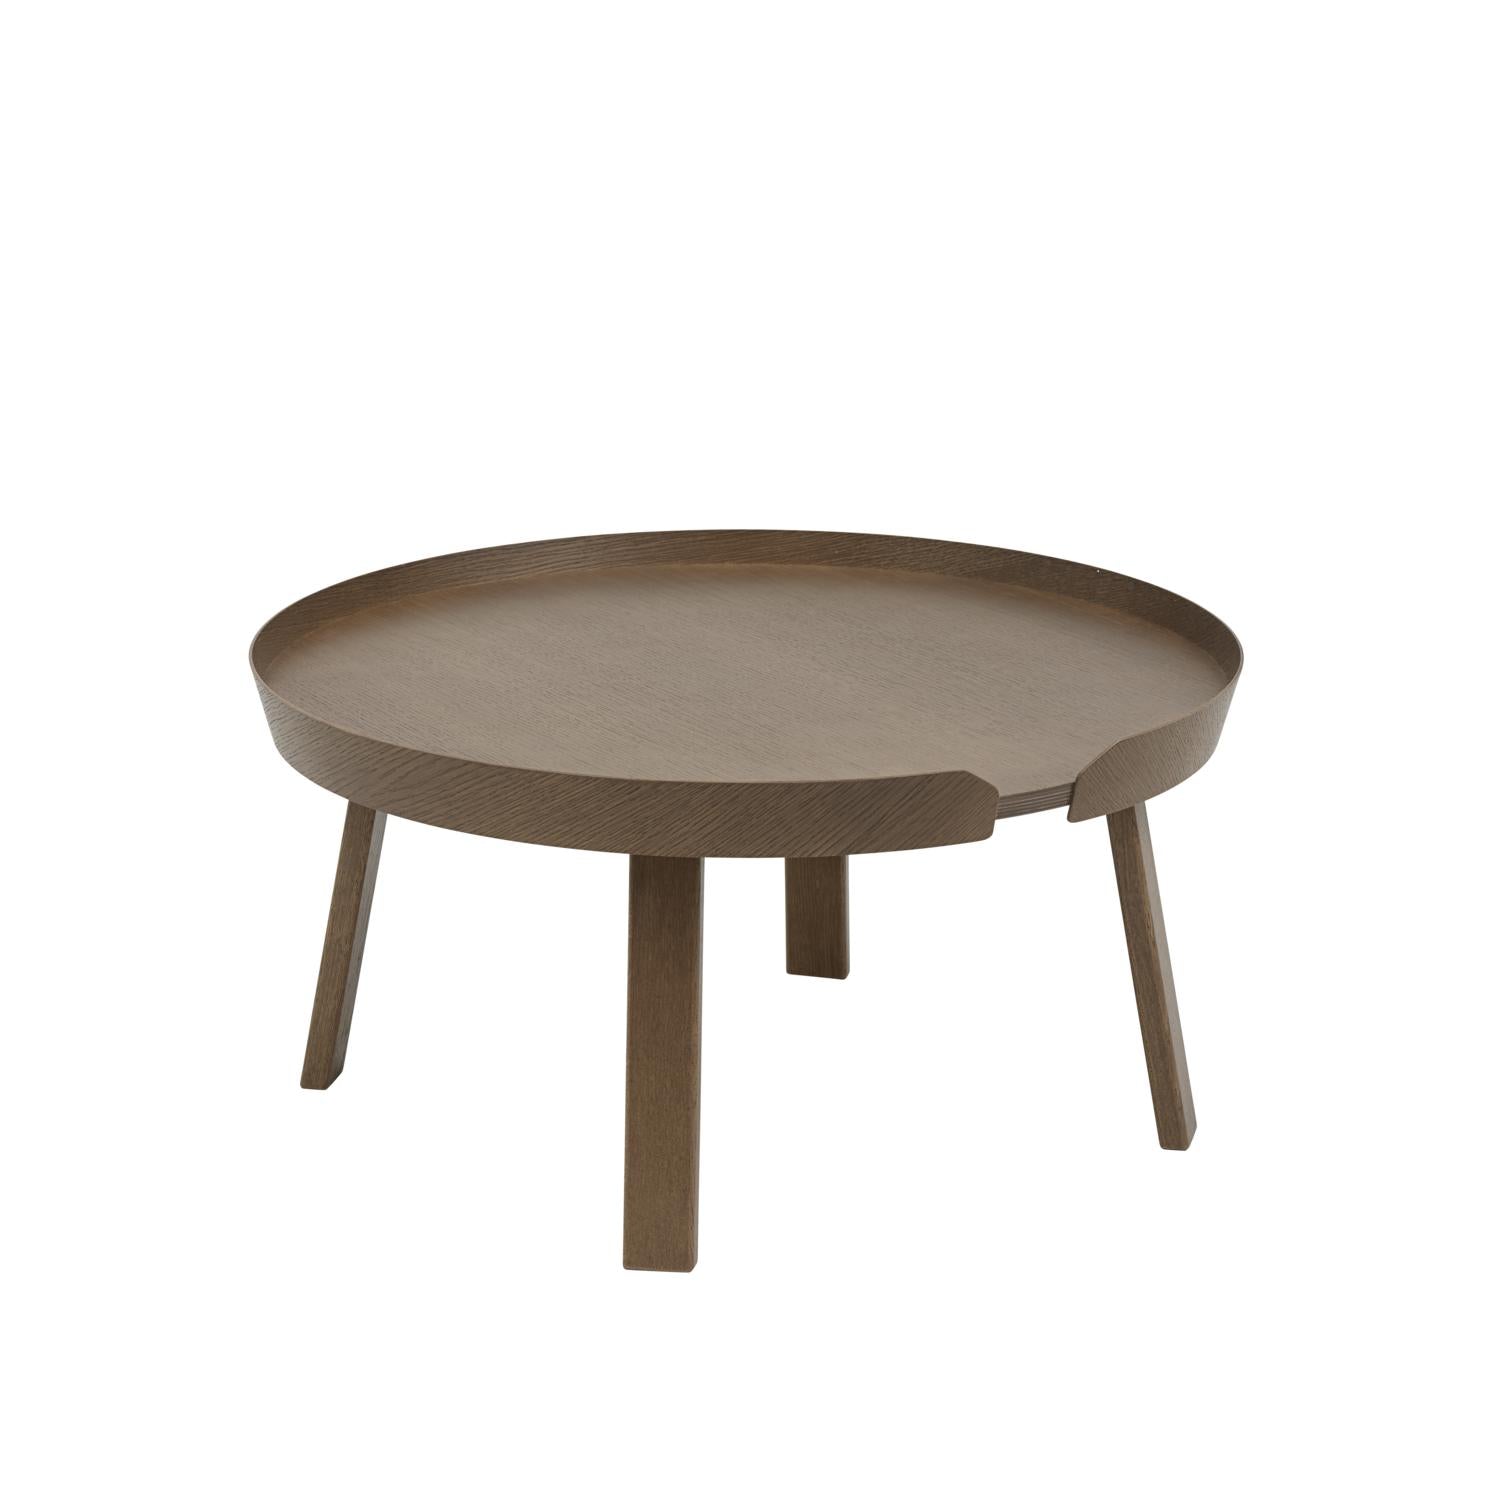 Muuto intorno al tavolino Ø 72 cm, macchiata di marrone scuro